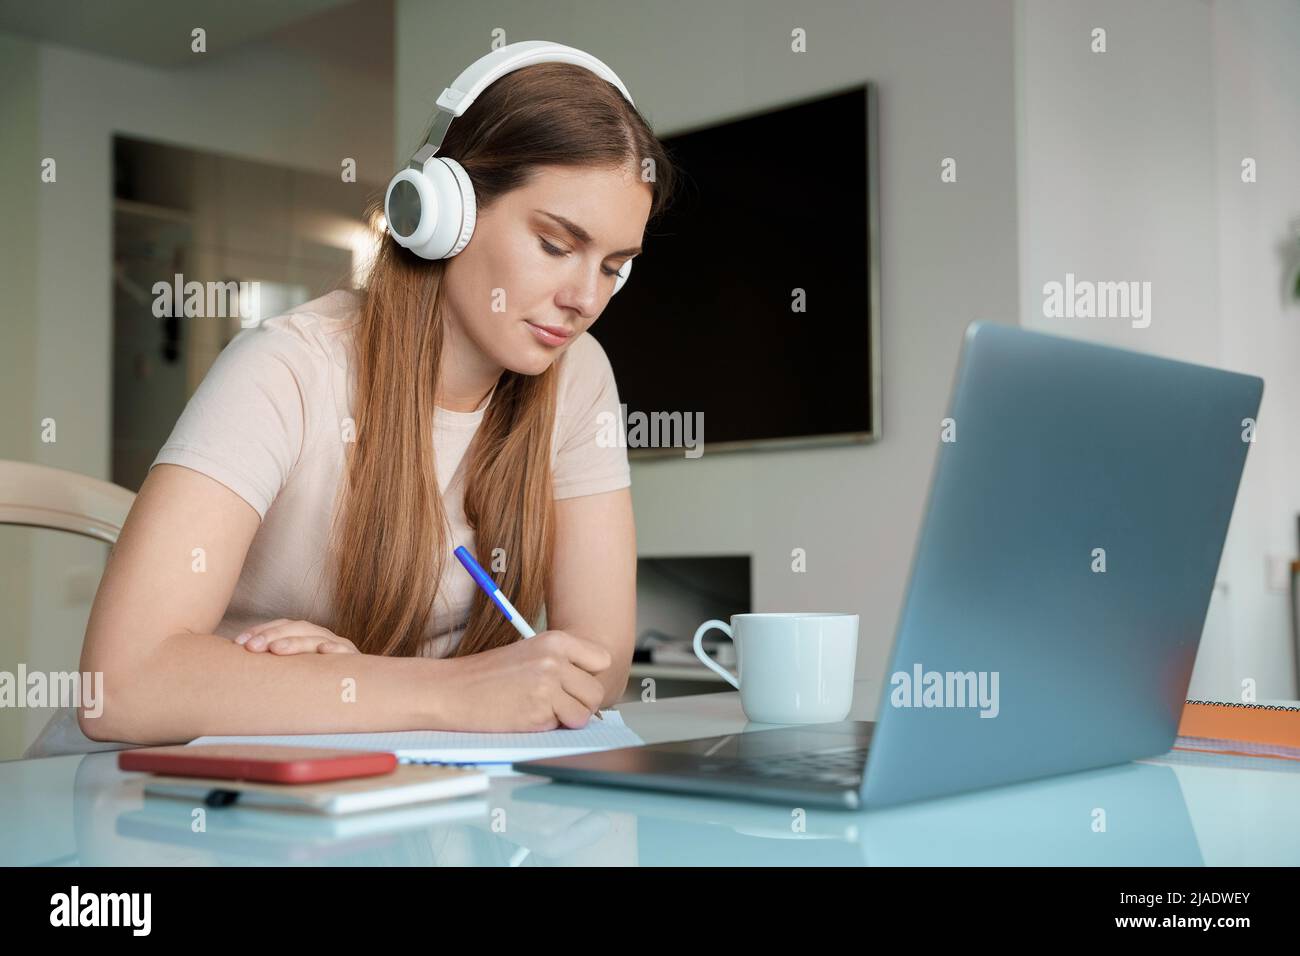 Femme adolescente dans un casque utilisant un ordinateur portable pour étudier en ligne à partir du bureau à domicile Banque D'Images